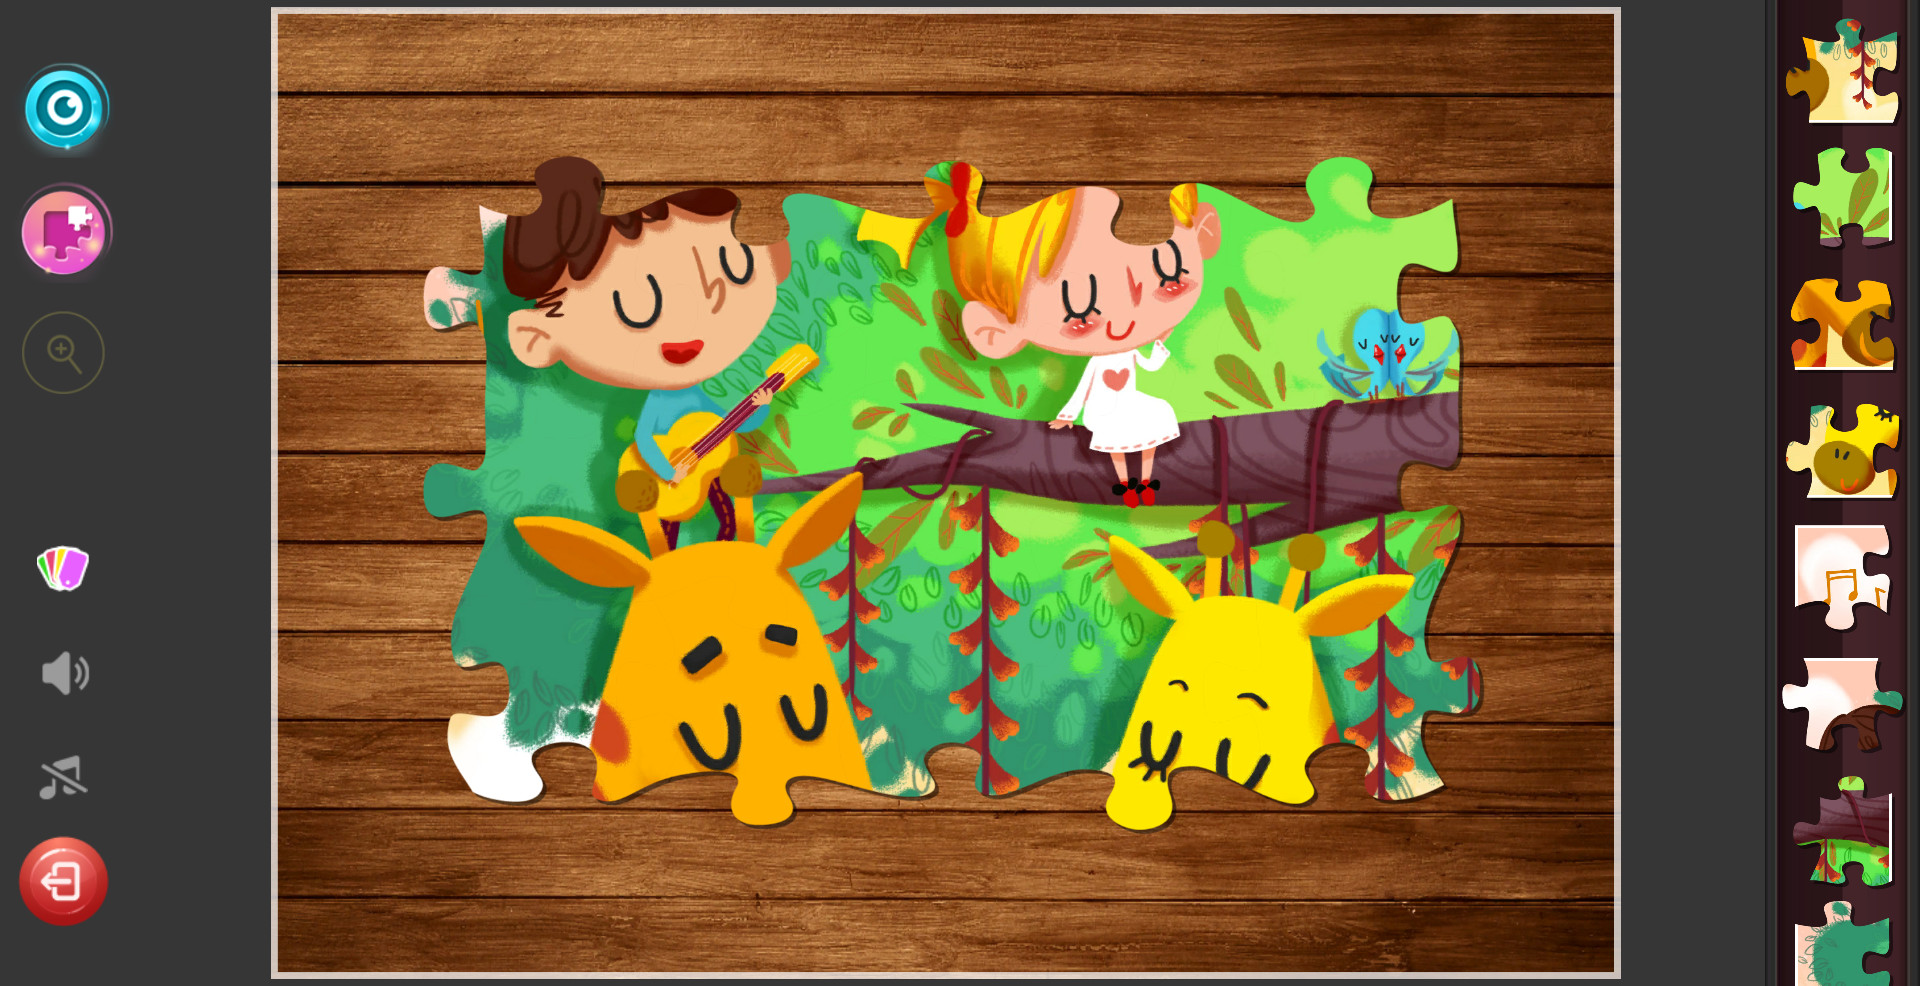 Children's Jigsaw Puzzles - A Warm Story screenshot